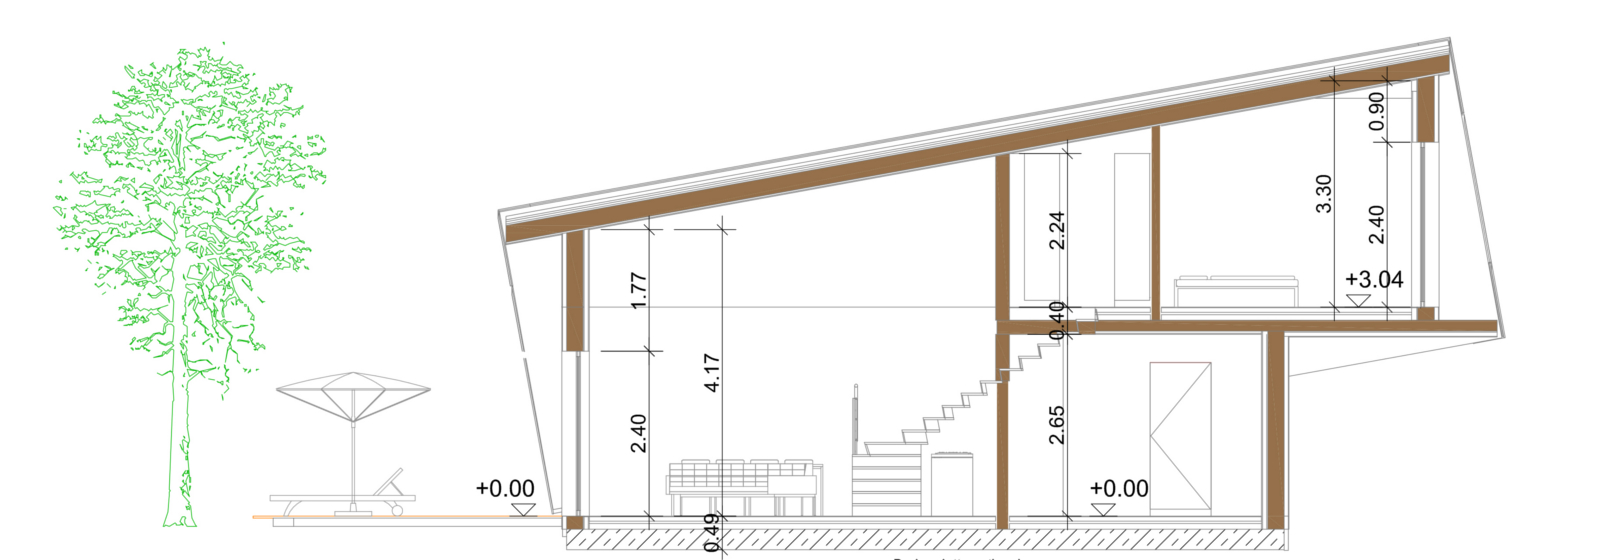 Smart-Loft für Individualisten Schnitt Grundriss energieeffizientes intelligentes Gebäudekonzept von Designer Gerold Peham